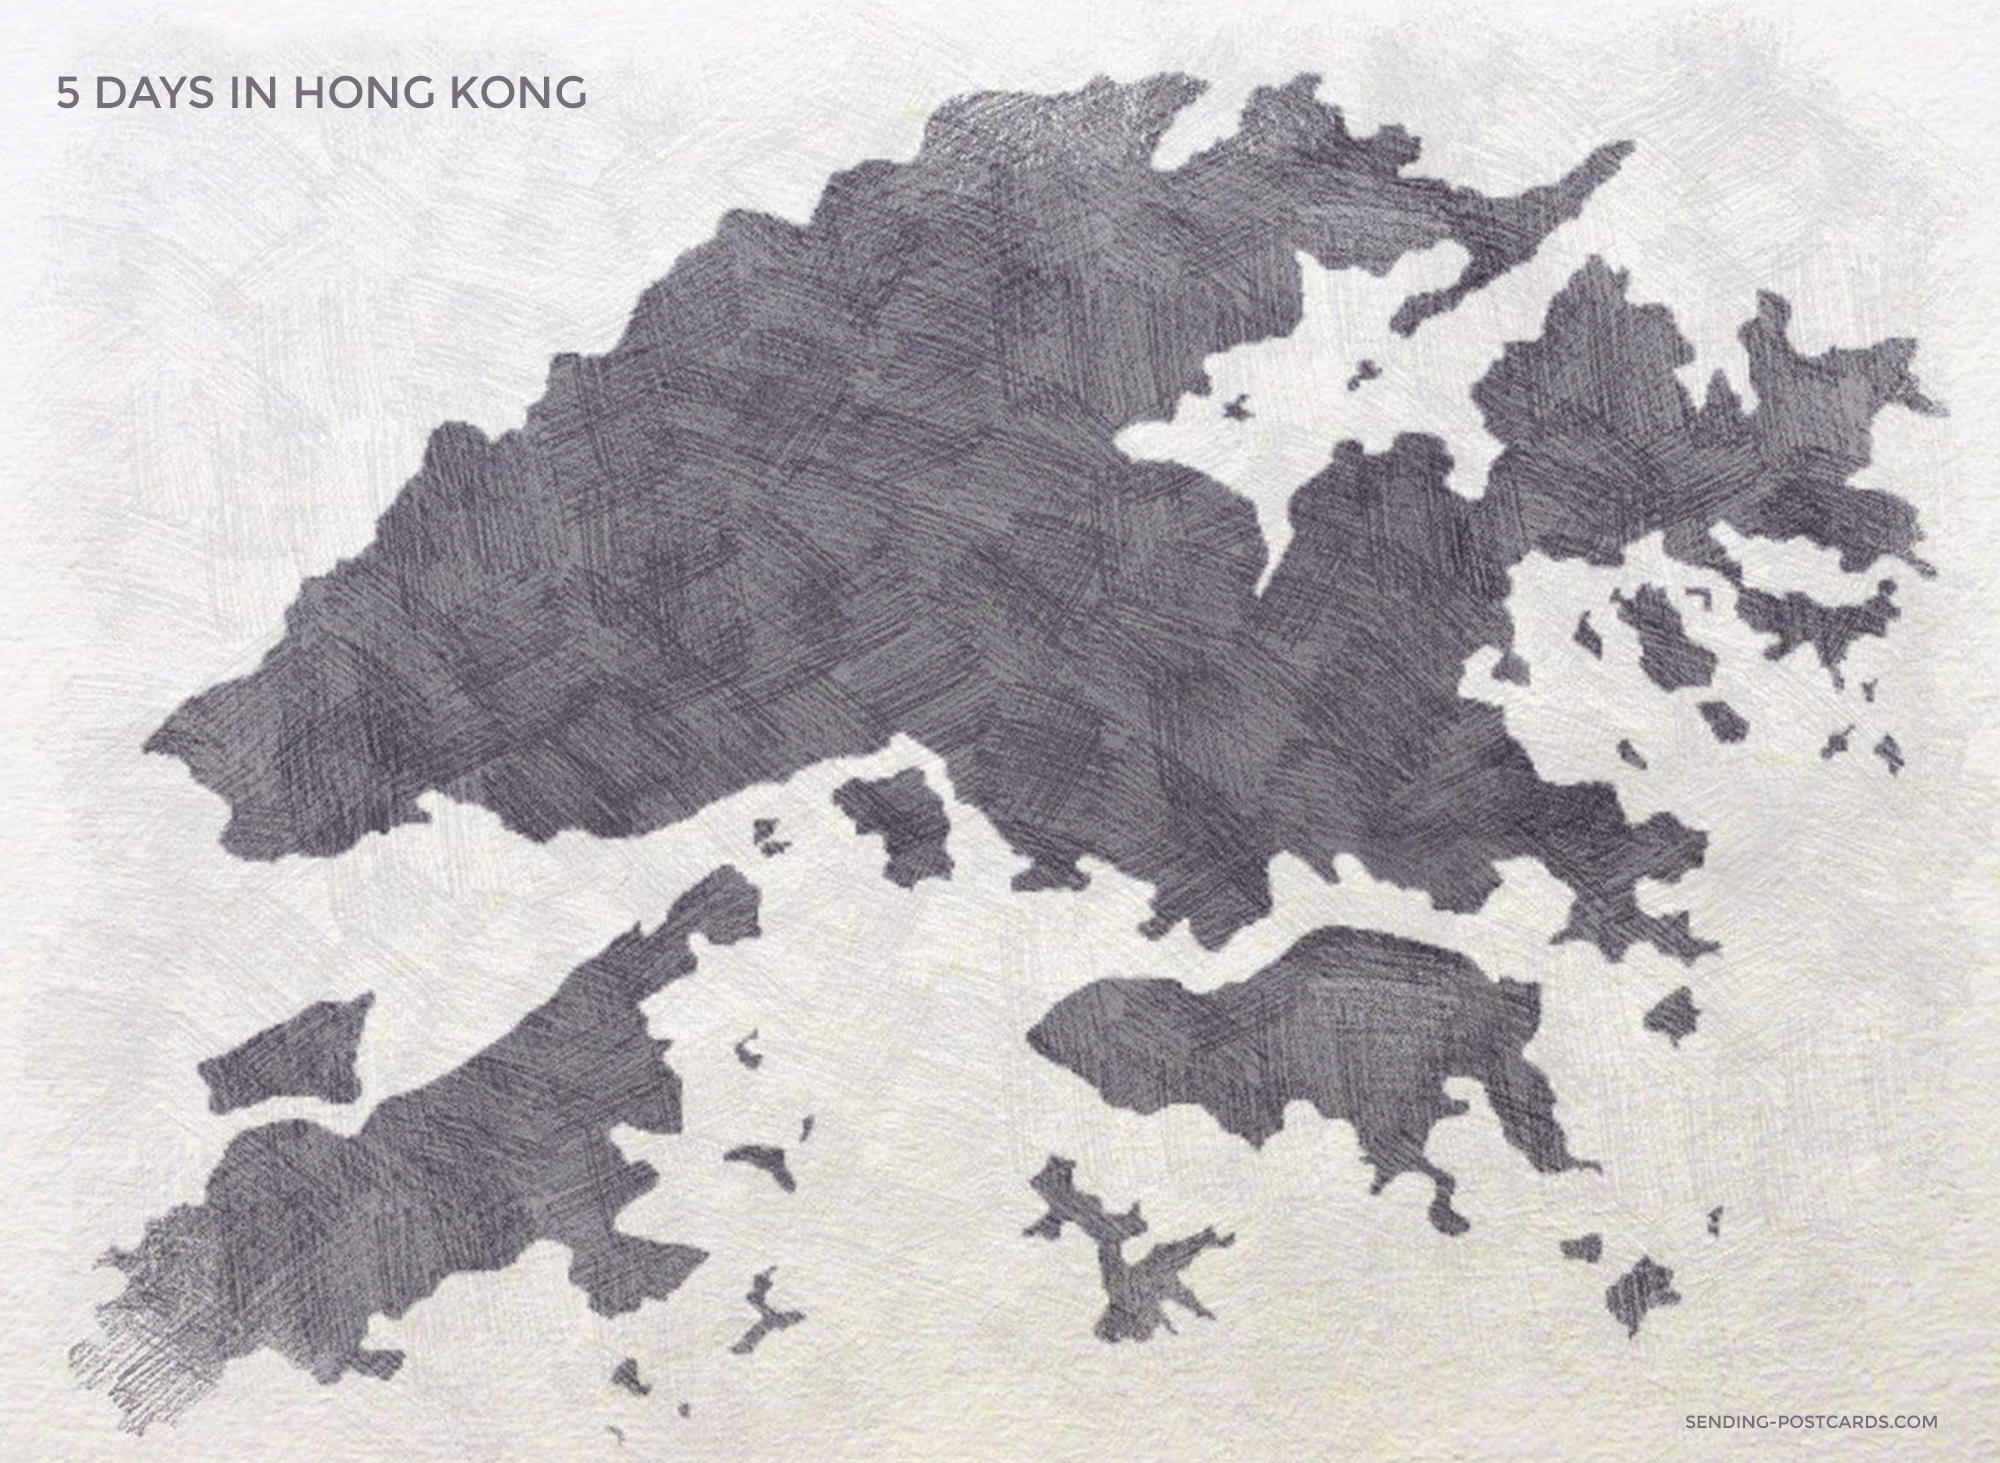 5 DAY HONG KONG ITINERARY